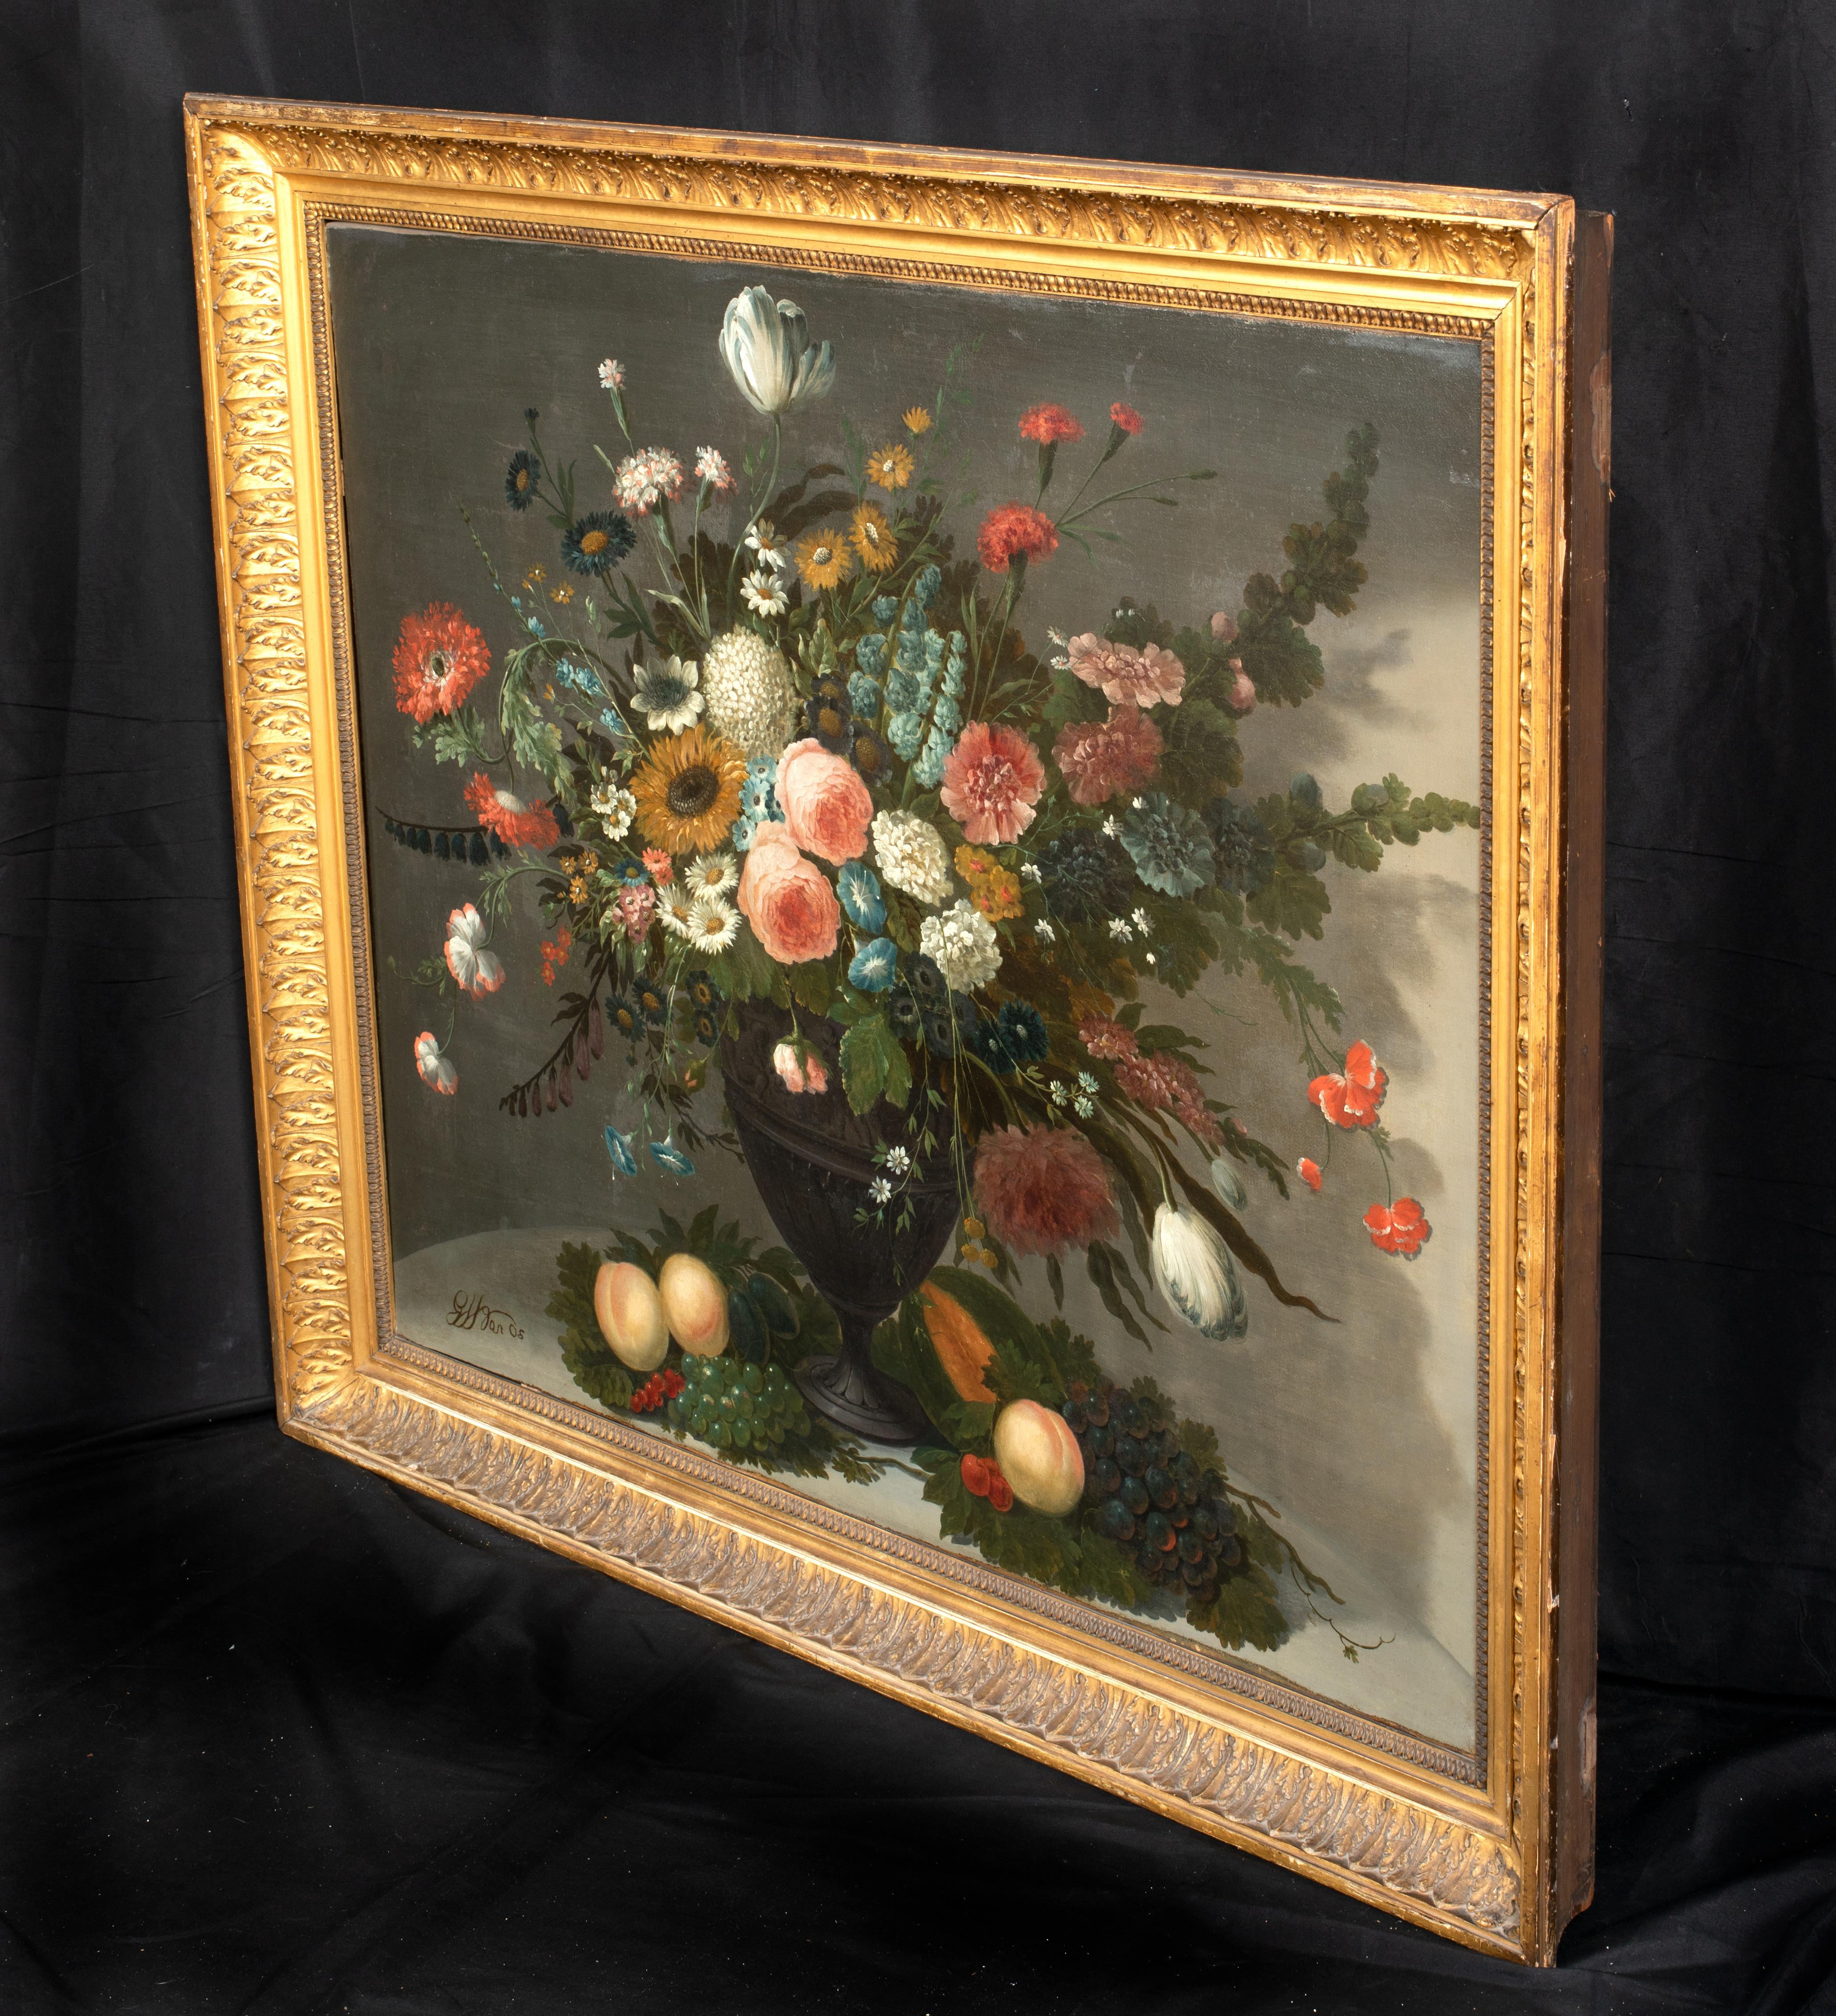 Stillleben mit Blumen in einer Glasvase, darunter Rosen Chrysanthemen, Rosen  – Painting von Unknown